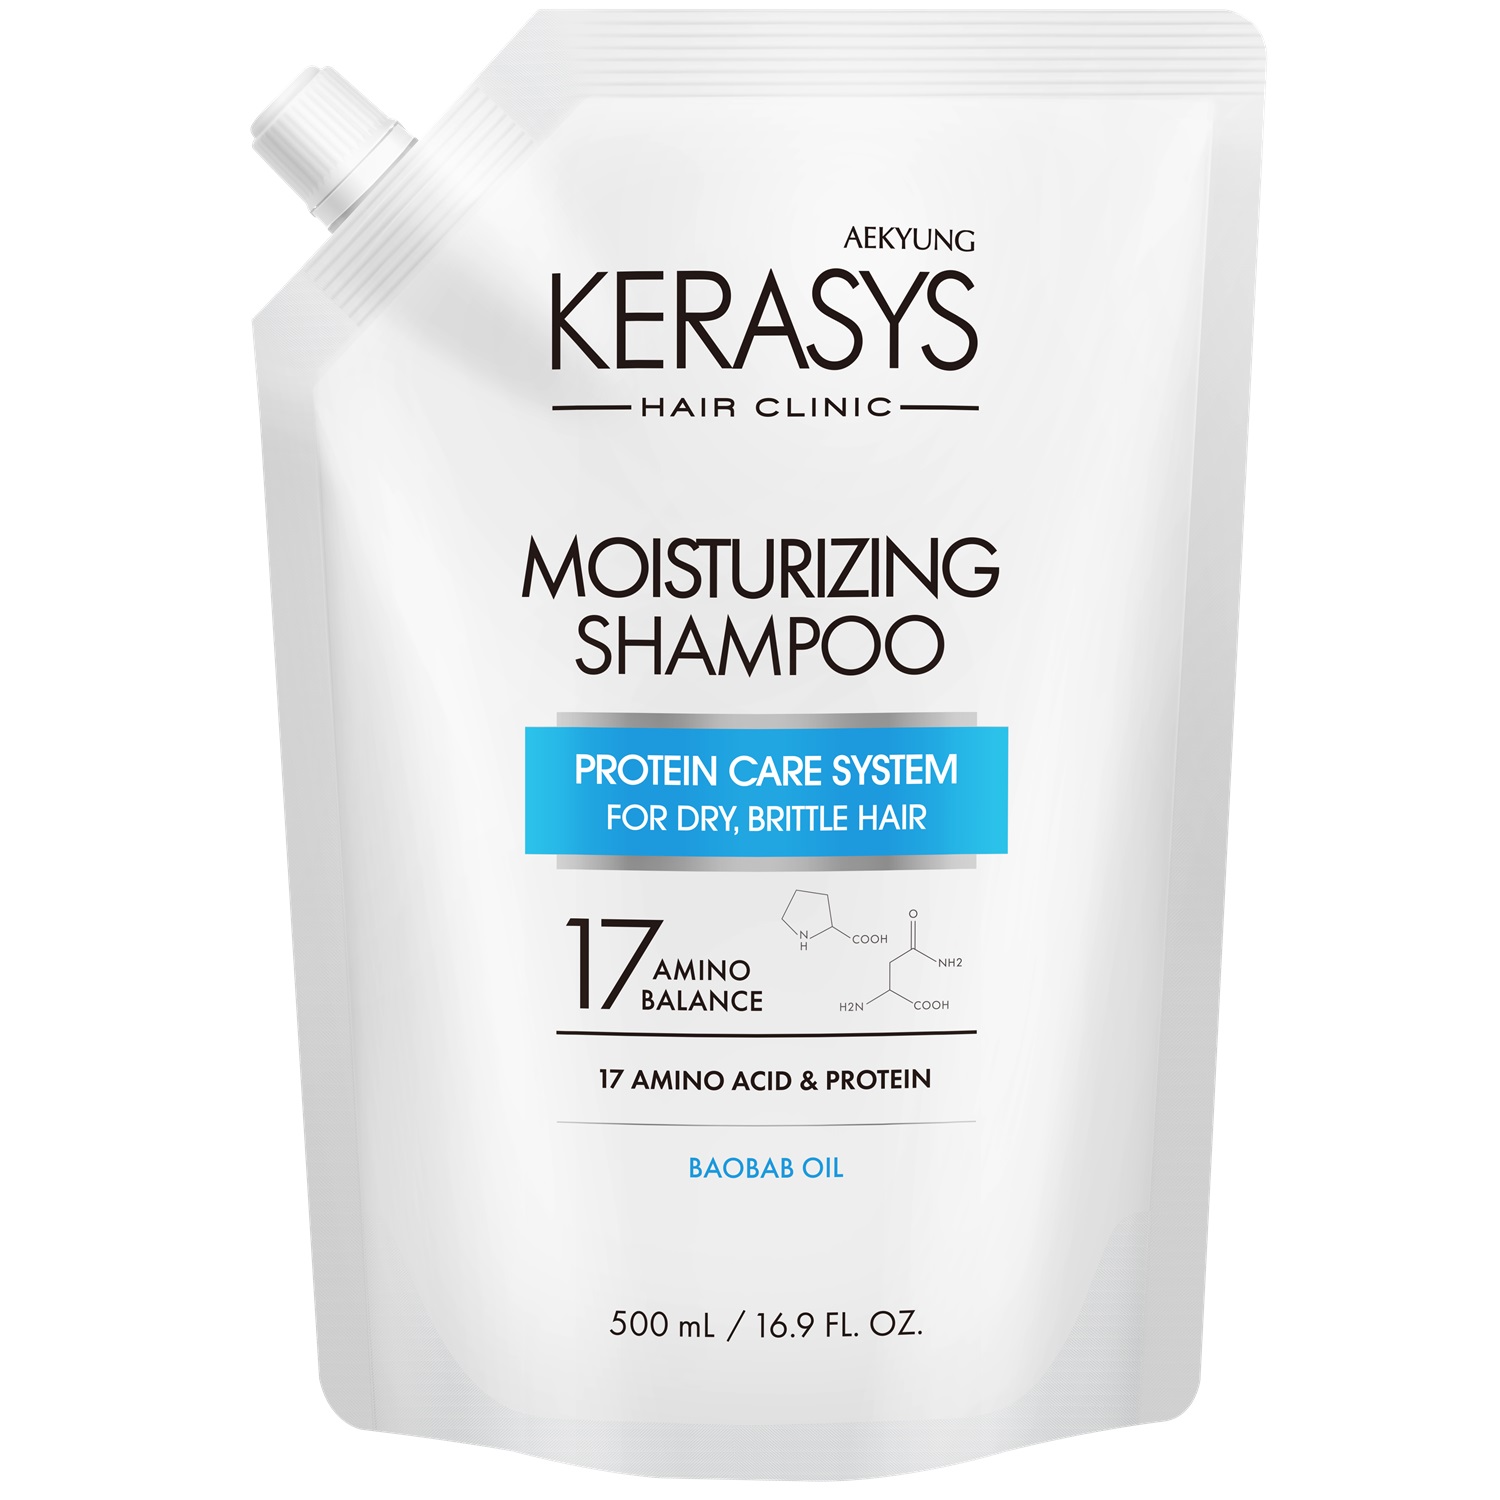 Kerasys Шампунь для волос увлажняющий, запасной блок 500 мл (Kerasys, Hair Clinic) шампунь для волос kerasys увлажняющий запасной блок 500 мл